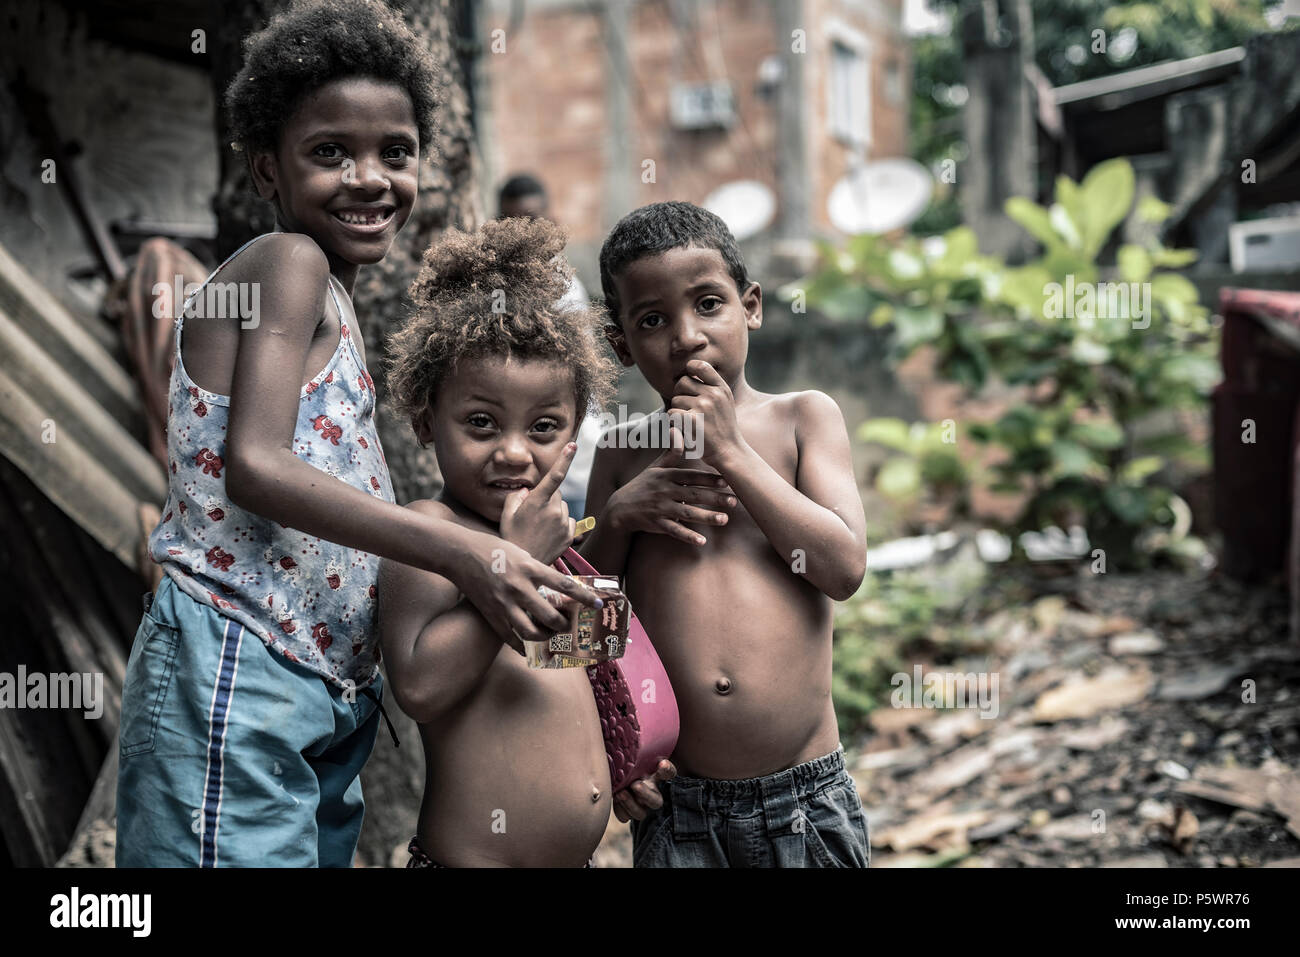 Arme Kinder in Rio de Janeiro Favela Stockfoto